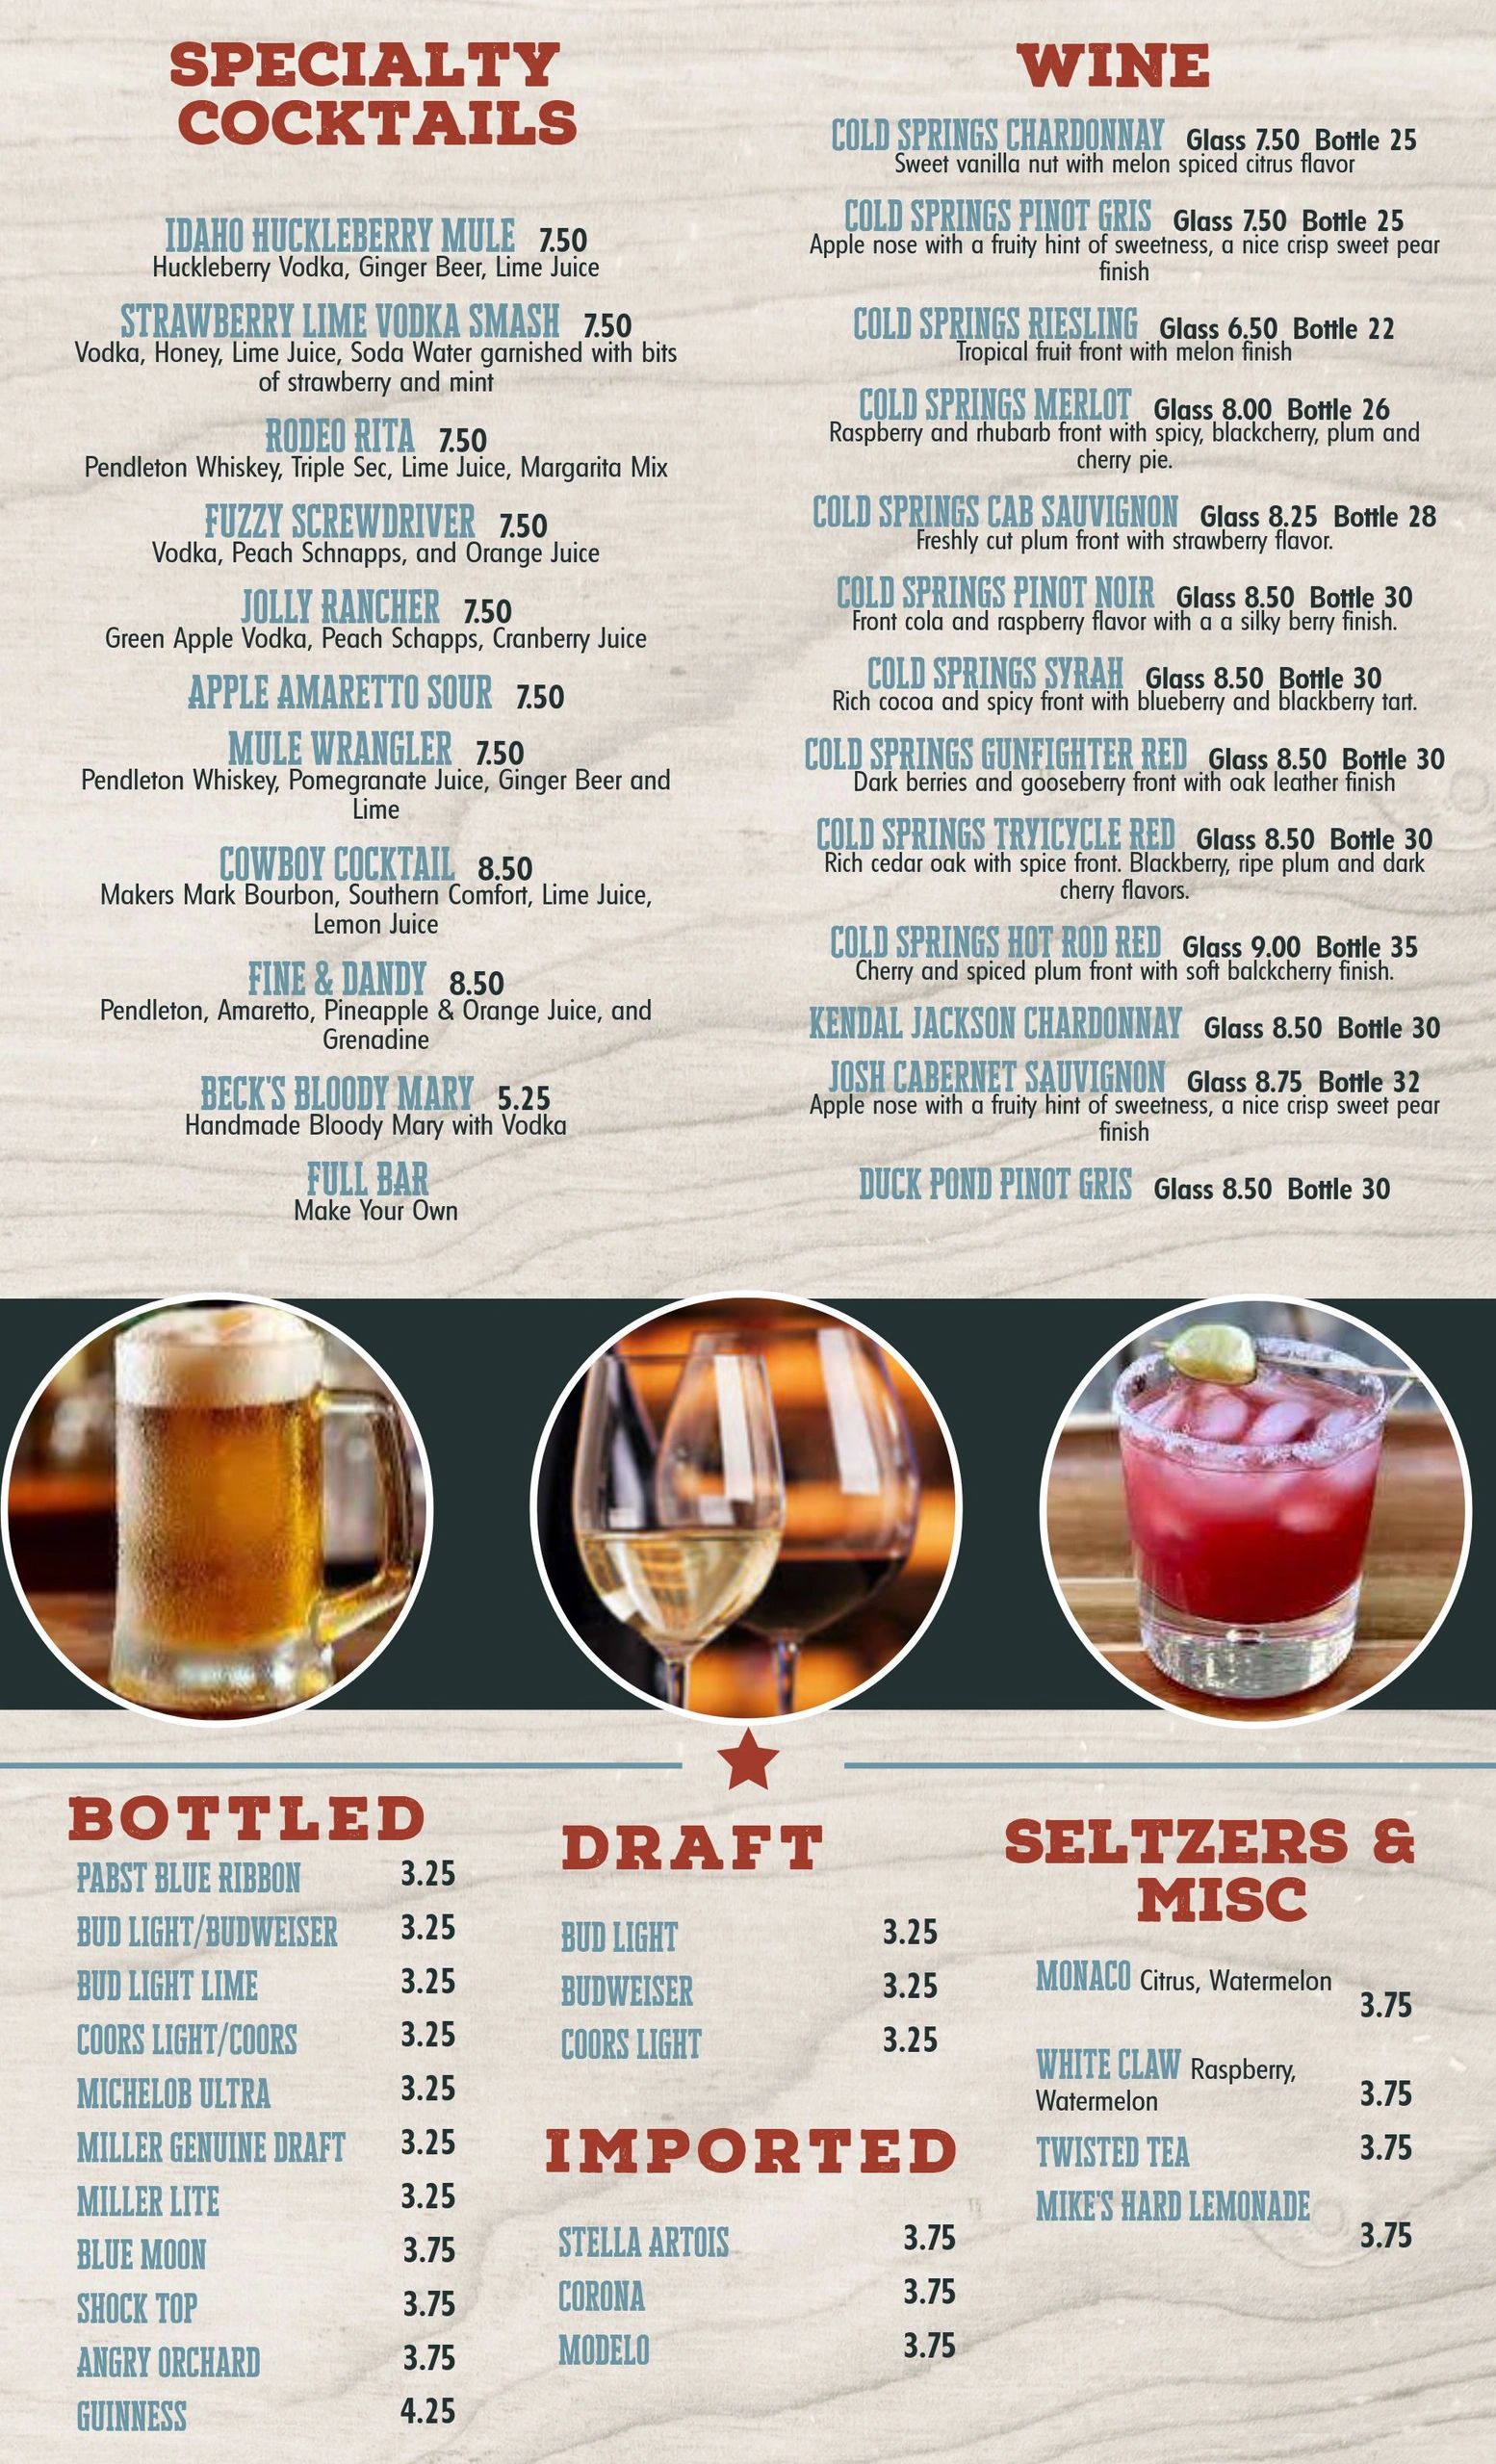 beverages drinks menu